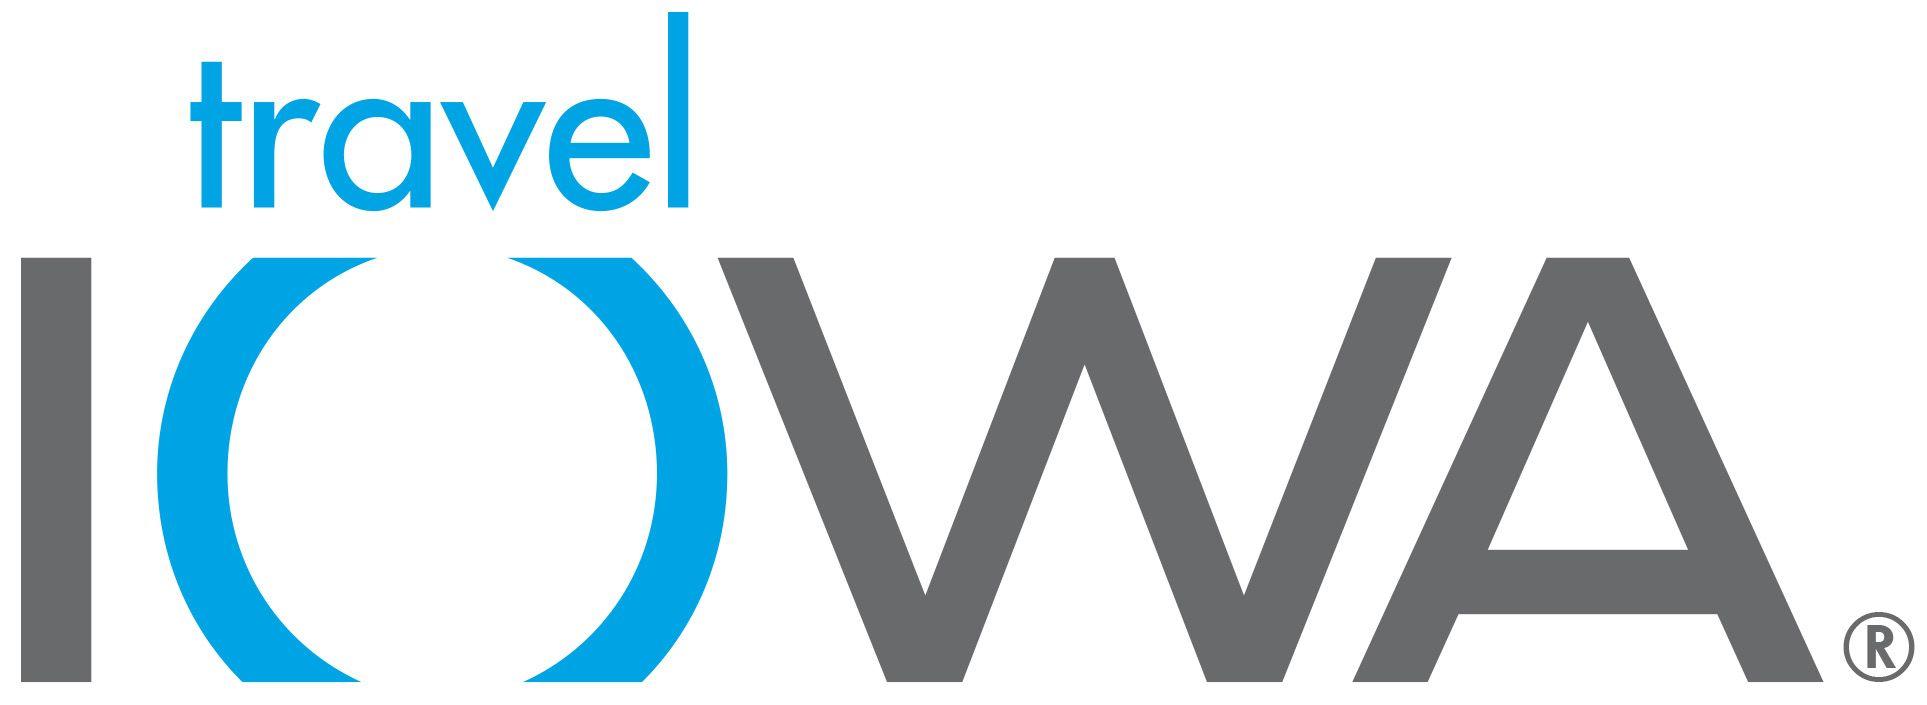 Iowa Logo - Travel Iowa Logos & Usage - Industry Partners